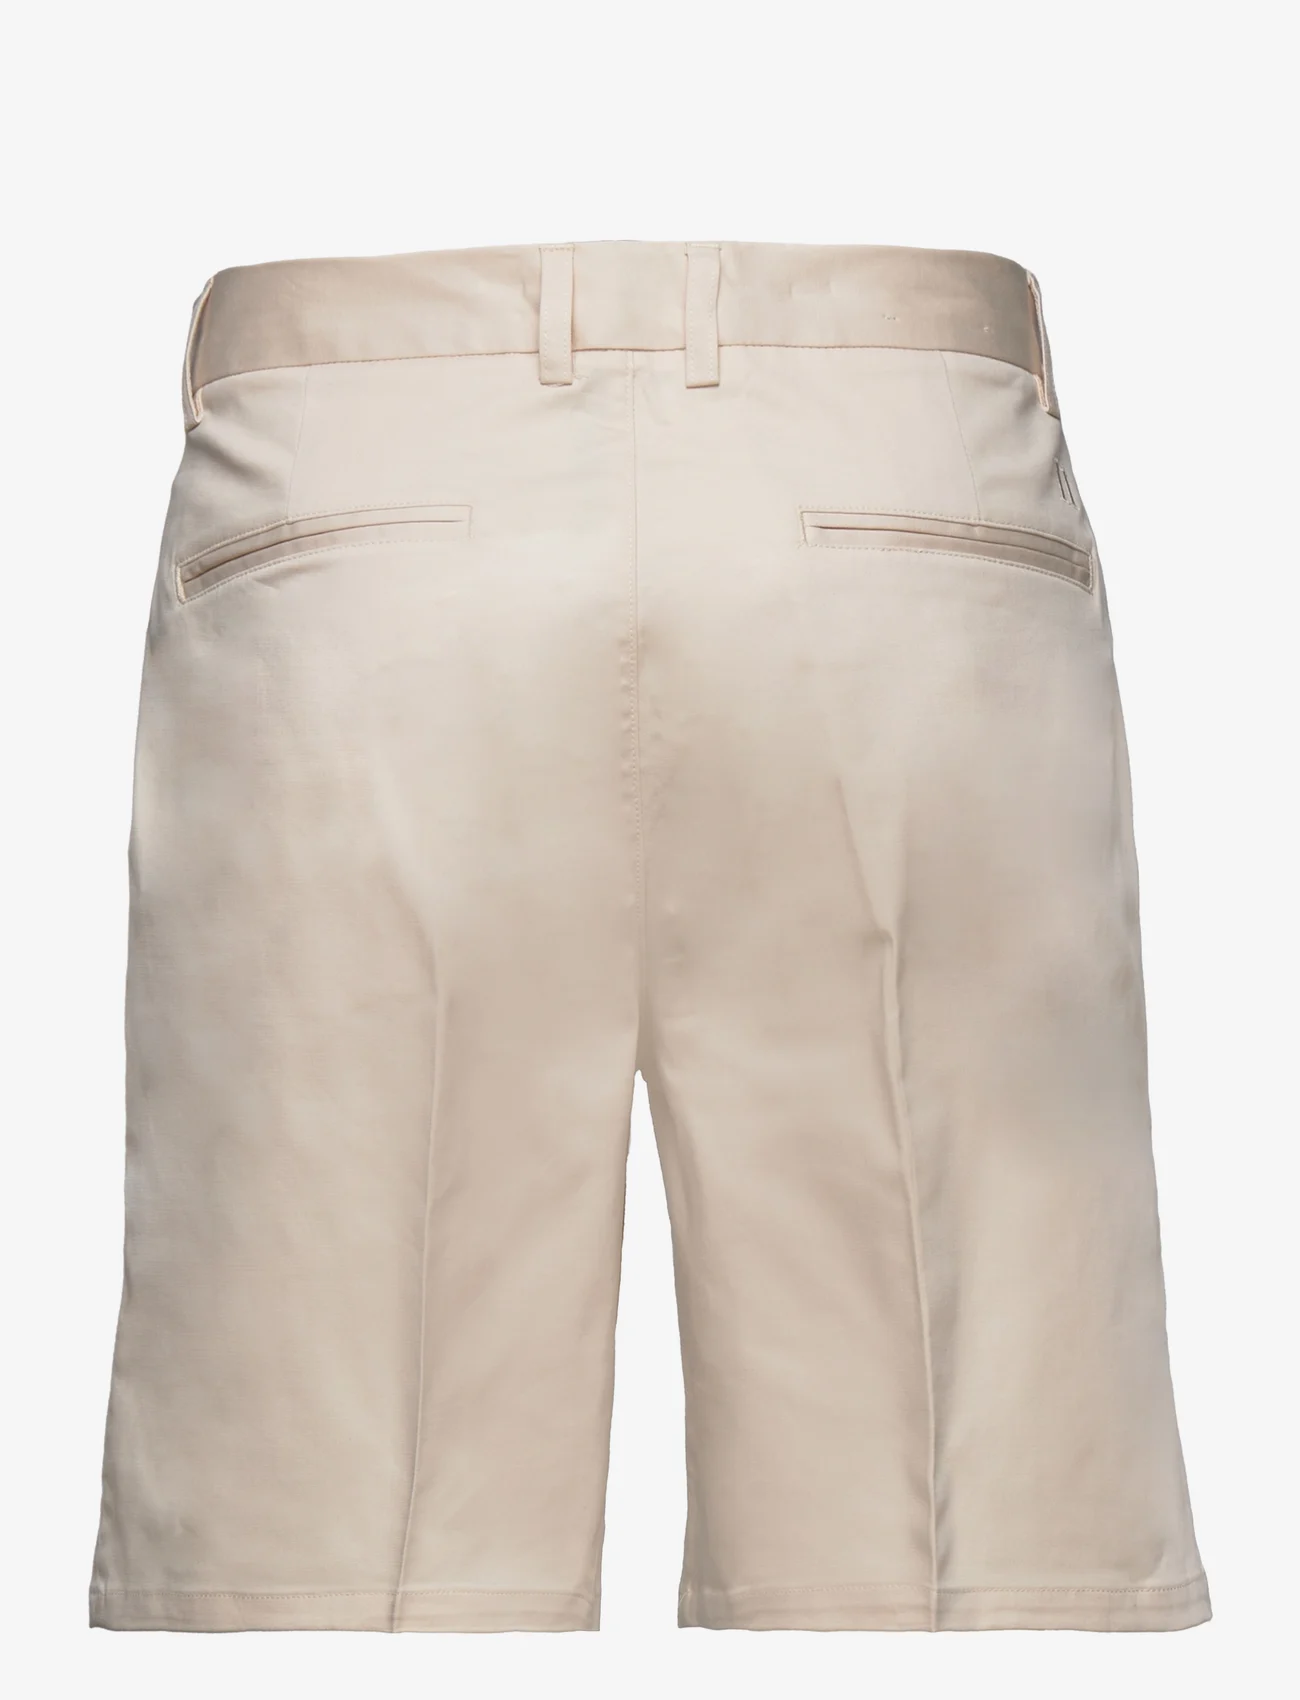 Les Deux - Como Reg Cotton-Linen Shorts - chino's shorts - ivory - 1